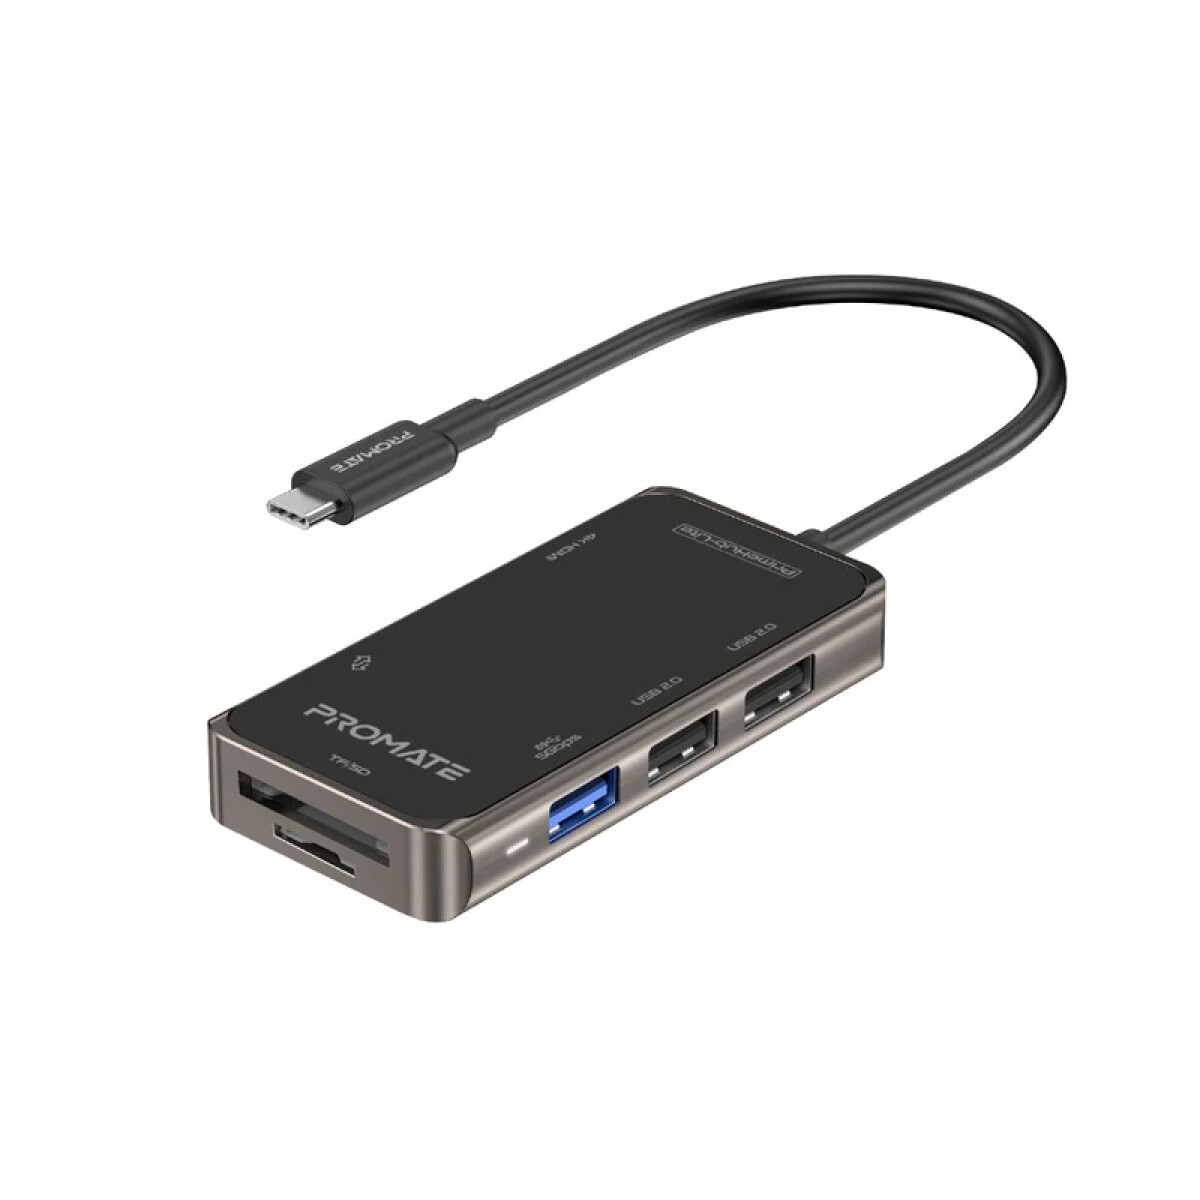 PROMATE PRIMEHUB-MINI HUB USB-C 110W/PD/HDMI/LAN/3USB 3.0/SD - Promate Primehub-mini Hub Usb-c 110w/pd/hdmi/lan/3usb 3.0/sd 